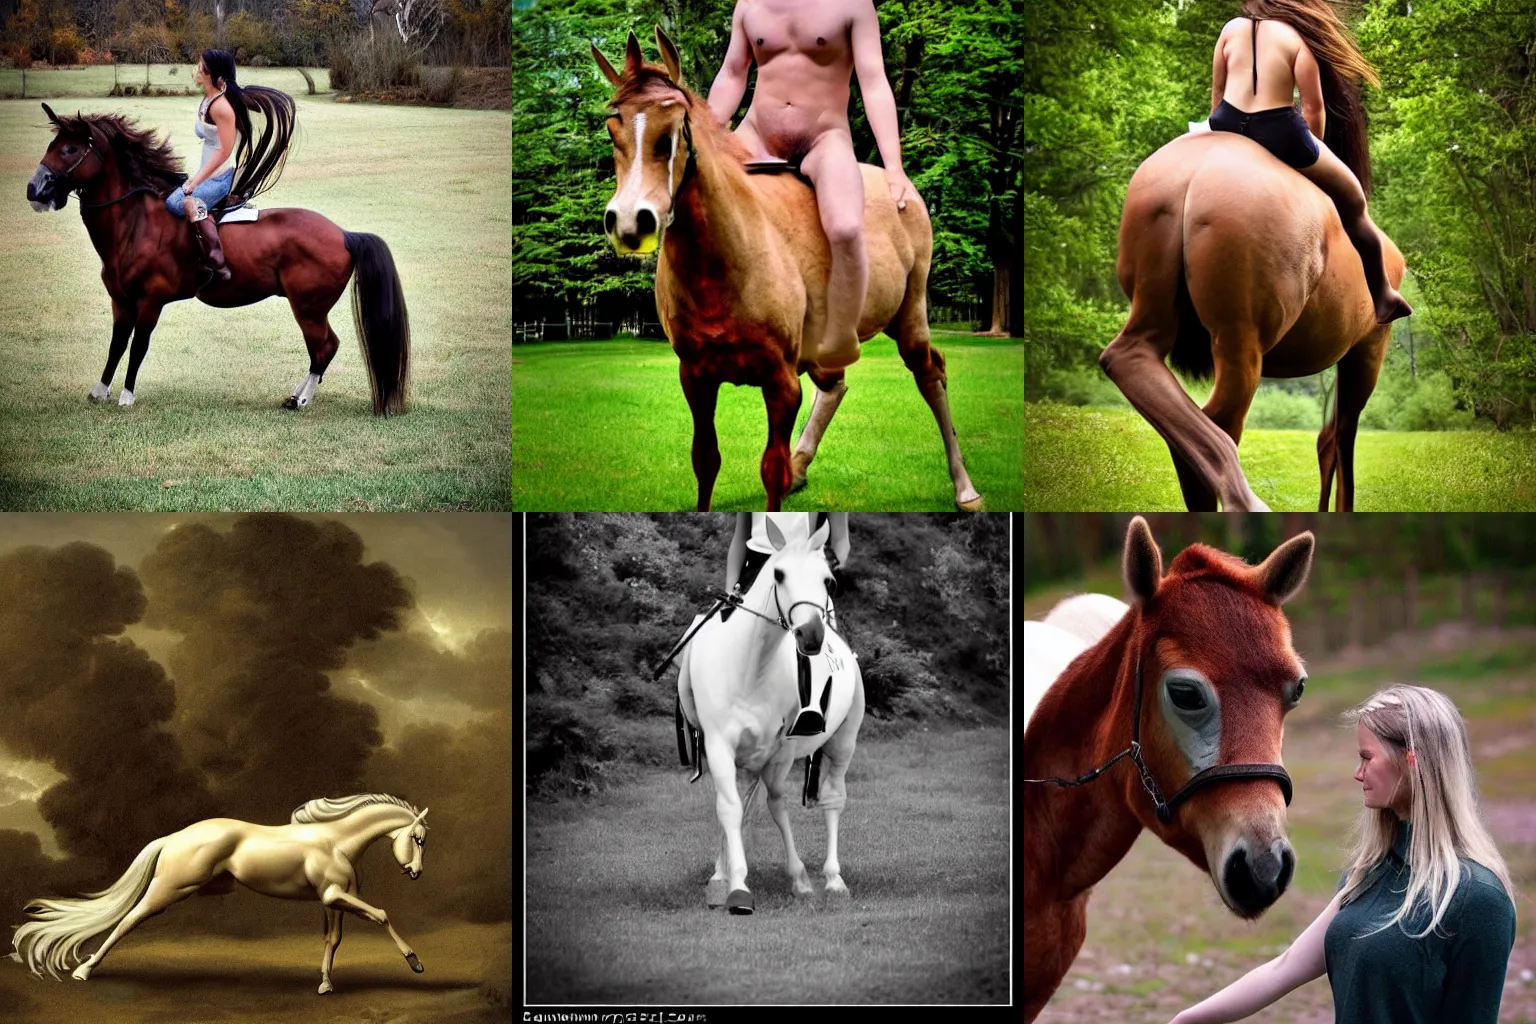 Prompt: a centaur, photo taken by a Nikon